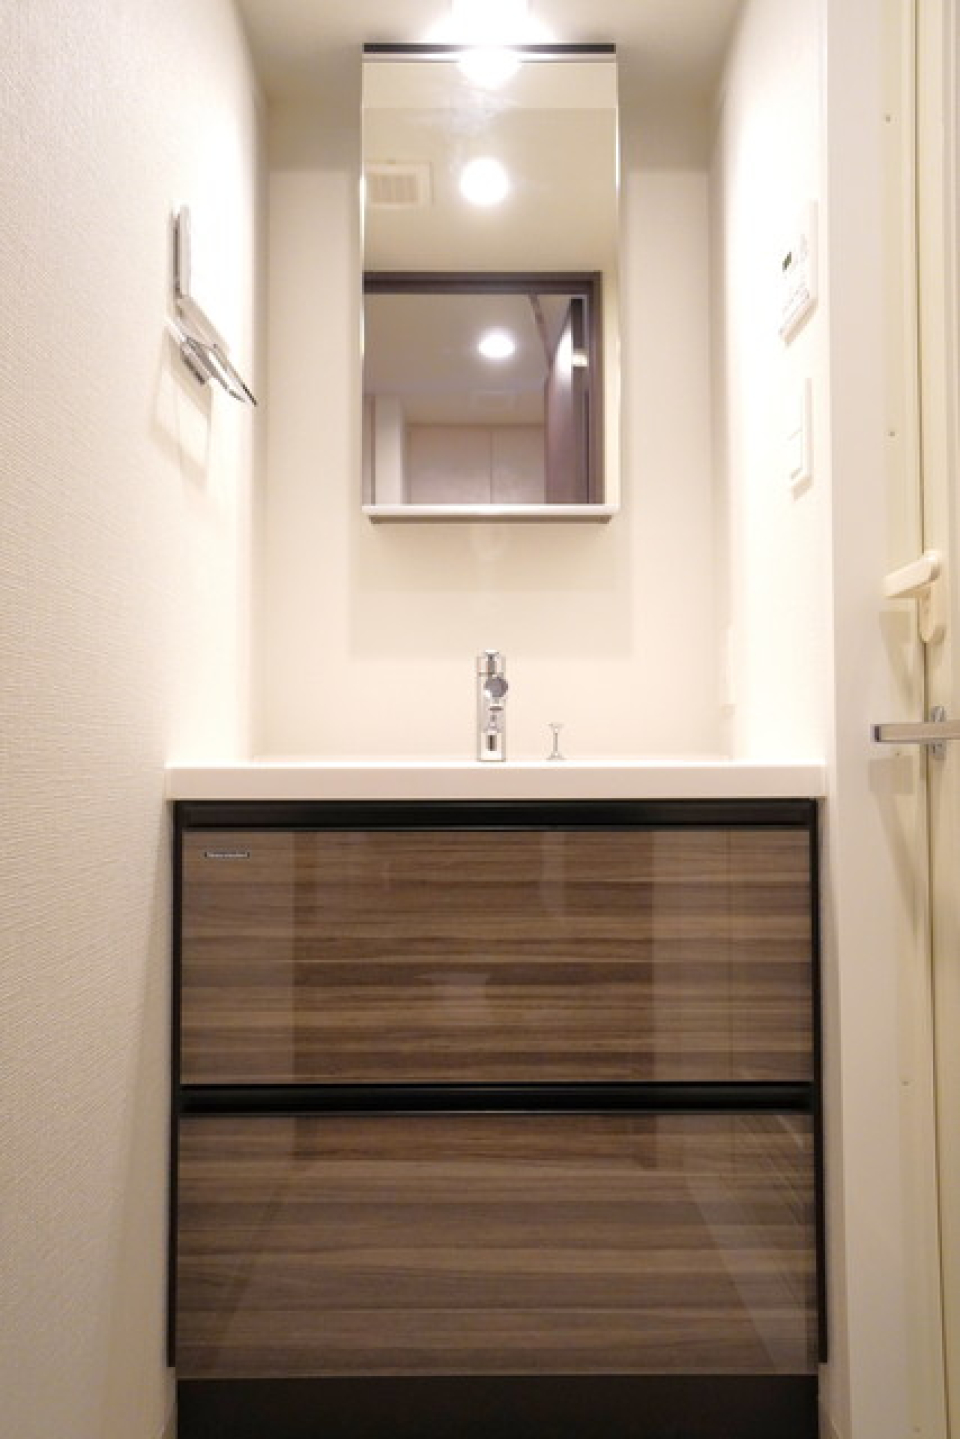 ナチュラルなパネルが使用された洗面台です。※写真は同タイプ住戸です。